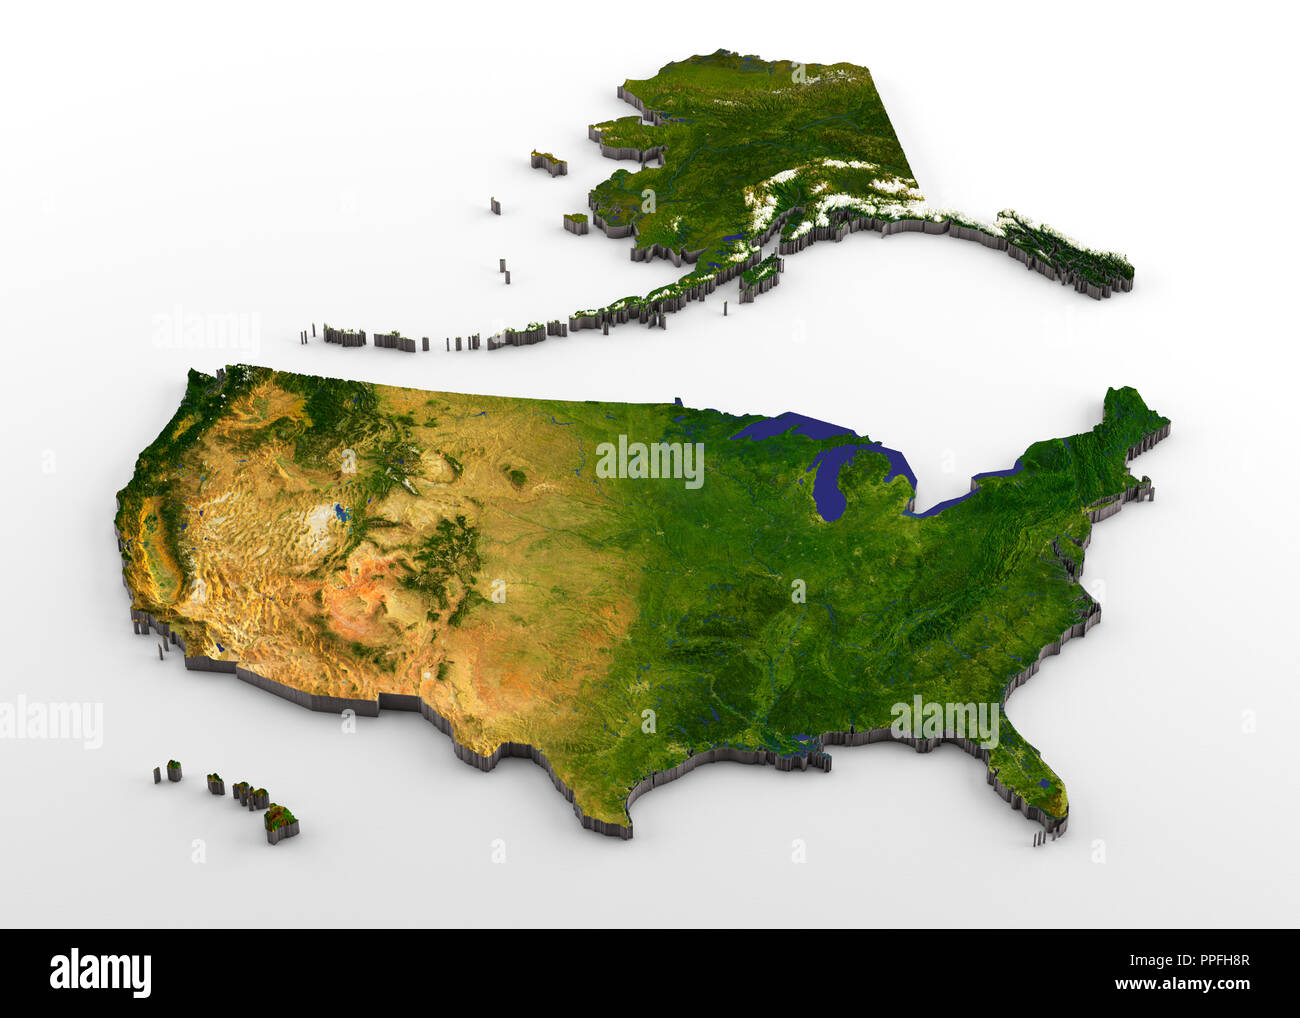 3D rendering di estrusi ad alta risoluzione mappa fisica (con rilievo) degli Stati Uniti, incluse Alaska e Hawaii, isolato su sfondo bianco Foto Stock